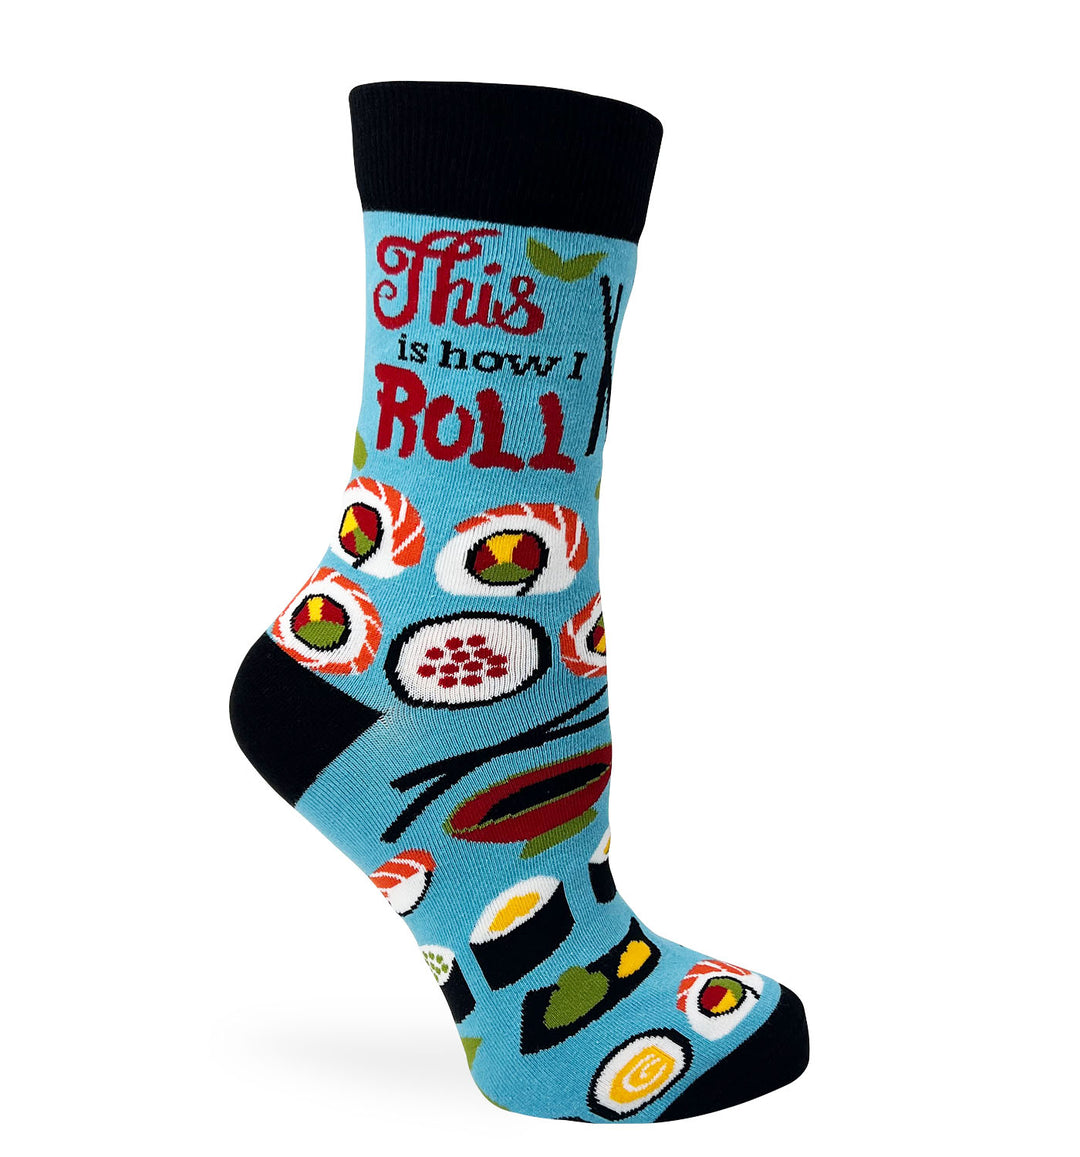 Funny novelty sushi socks for women